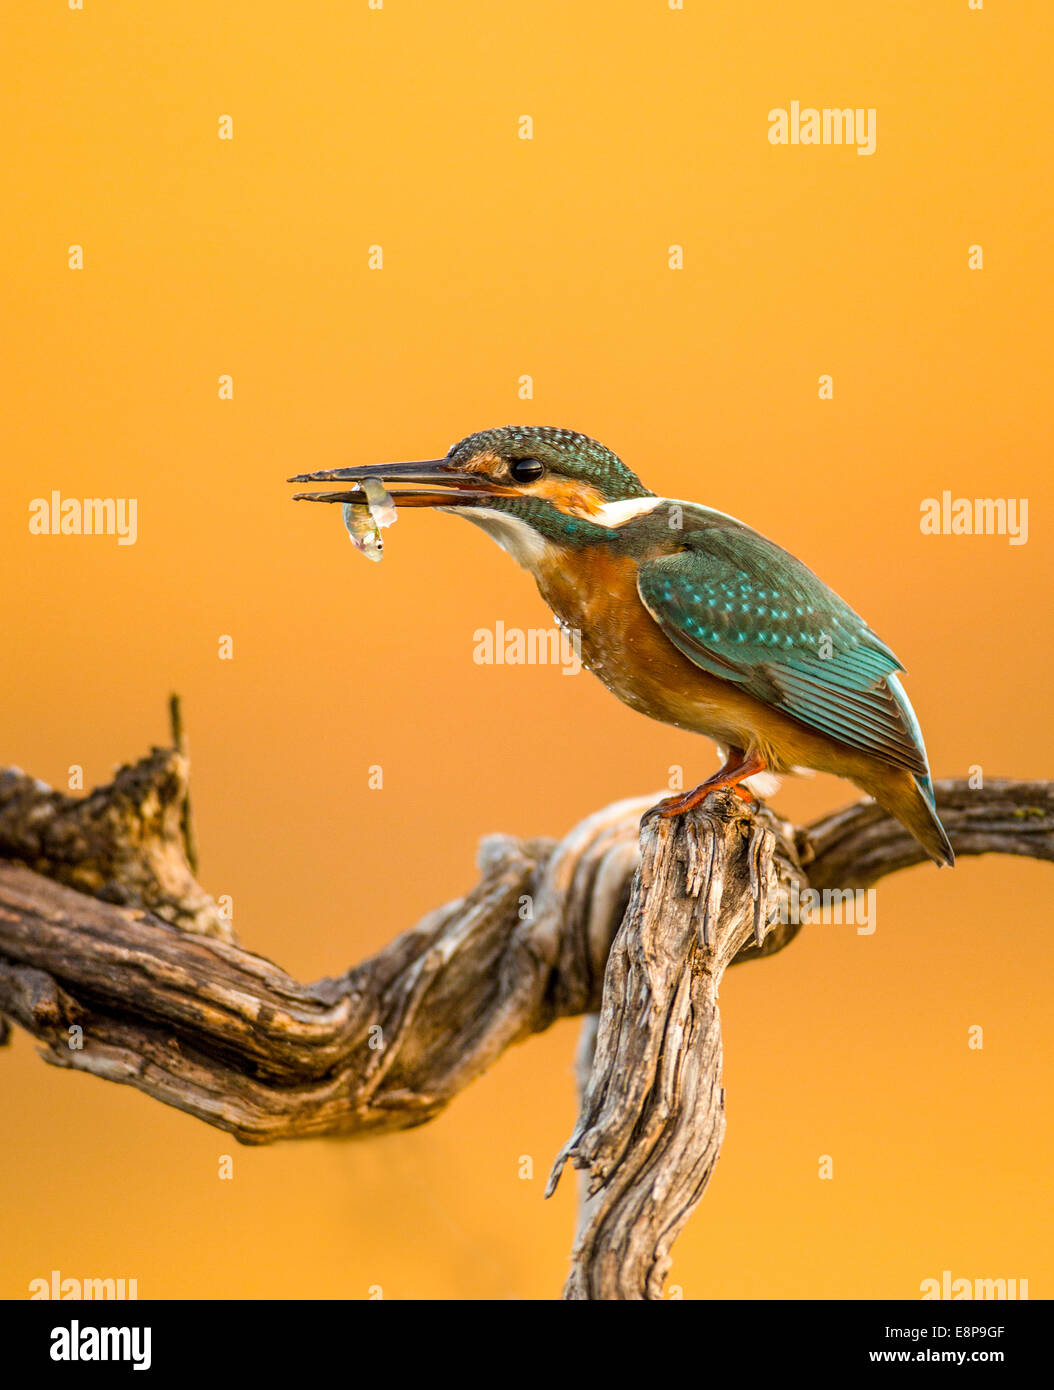 Common Kingfisher (Alcedo atthis), AKA Eurasian Kingfisher or River Kingfisher. This colourful bird is found throughout Eurasia Stock Photo